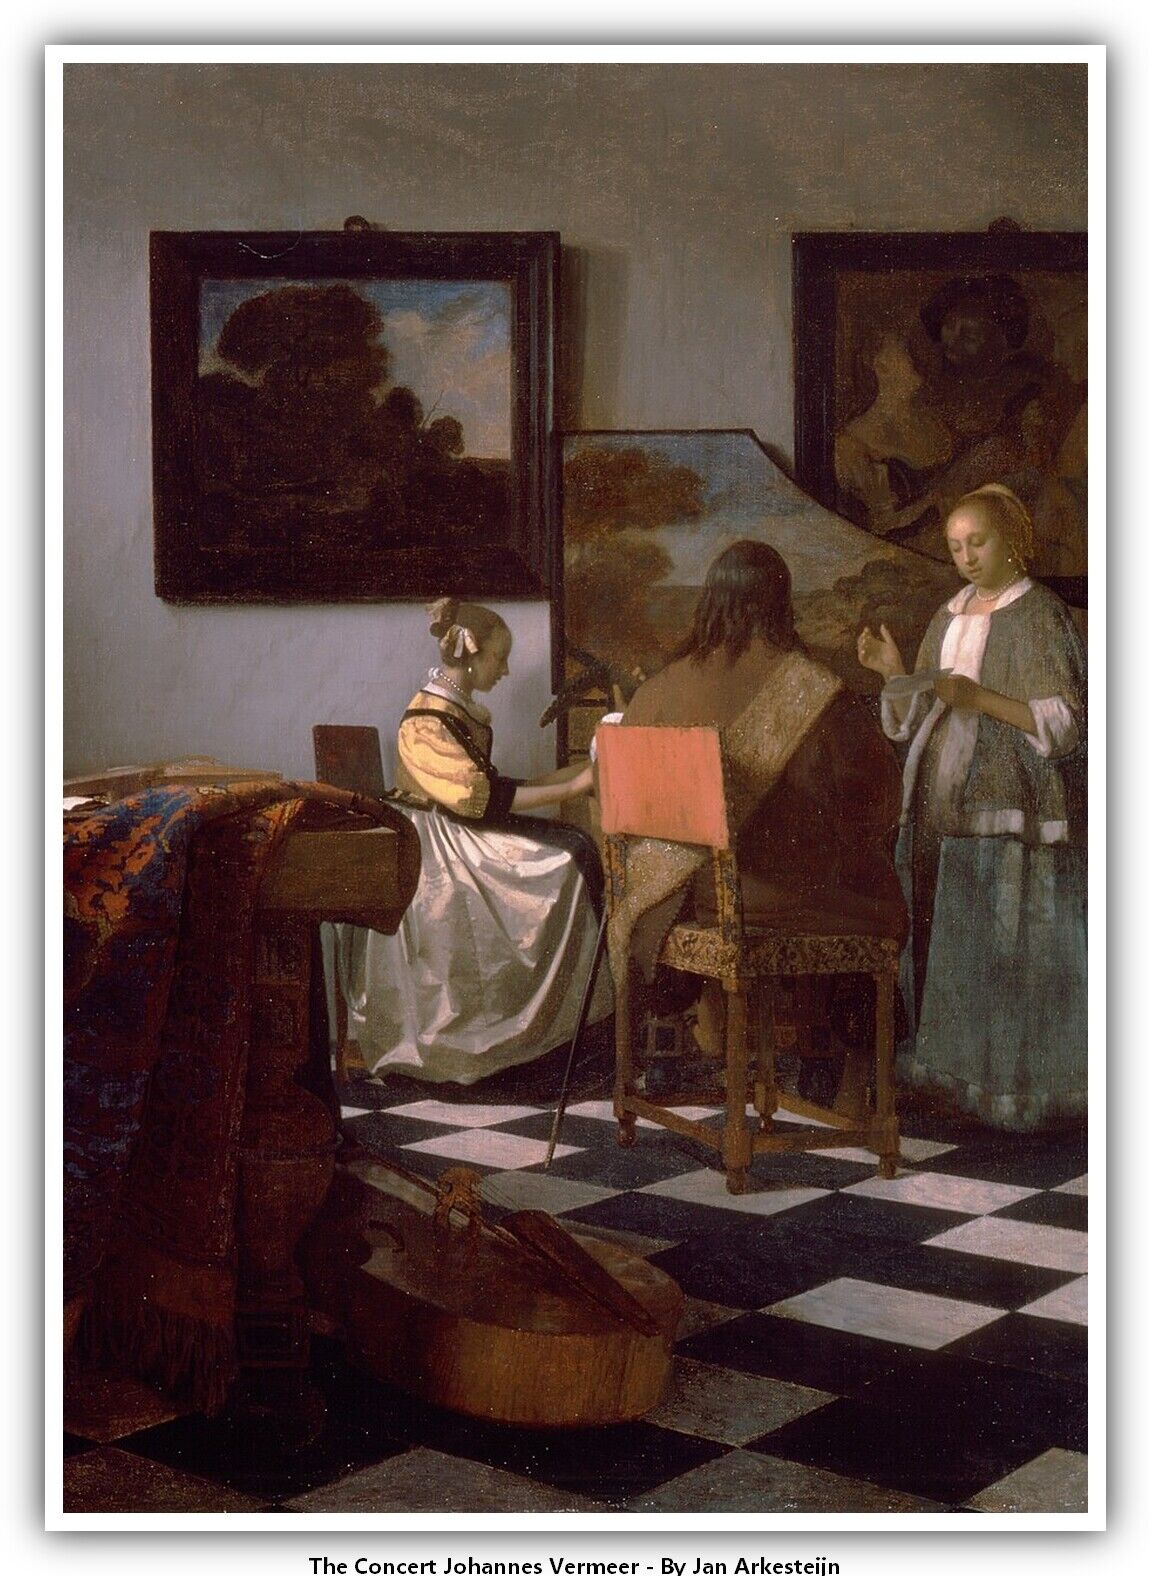 The Concert Johannes Vermeer